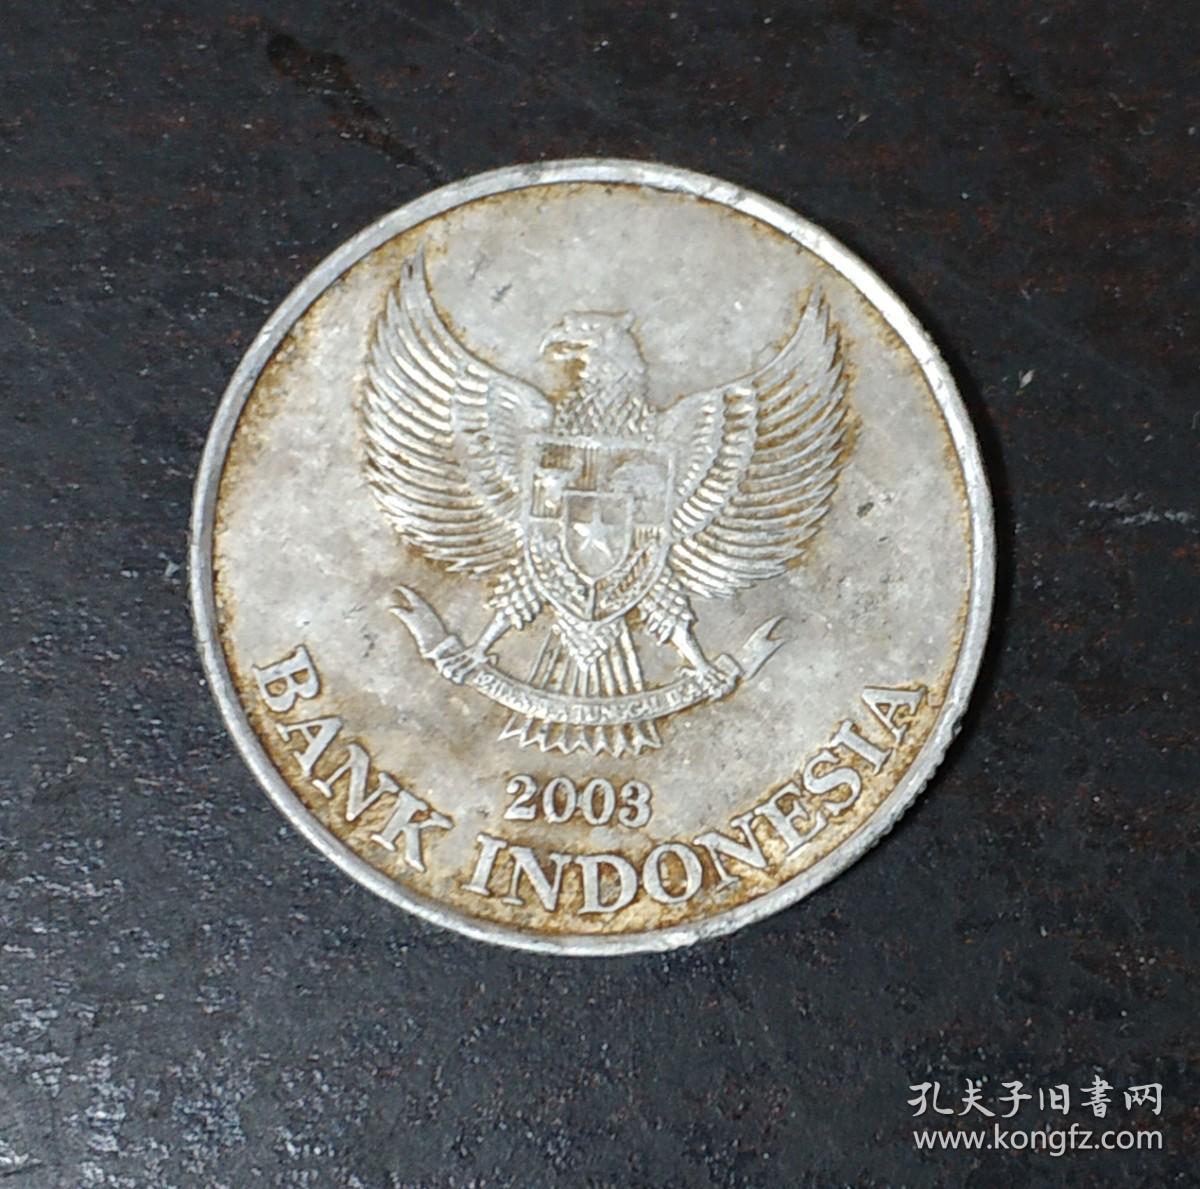 1970年印度尼西亚2000盾精制金币。巴黎造币厂。INDONESIA. 2000 Rupiah, 1970. London Mint. NGC PROOF-69 Ultra Cameo ...